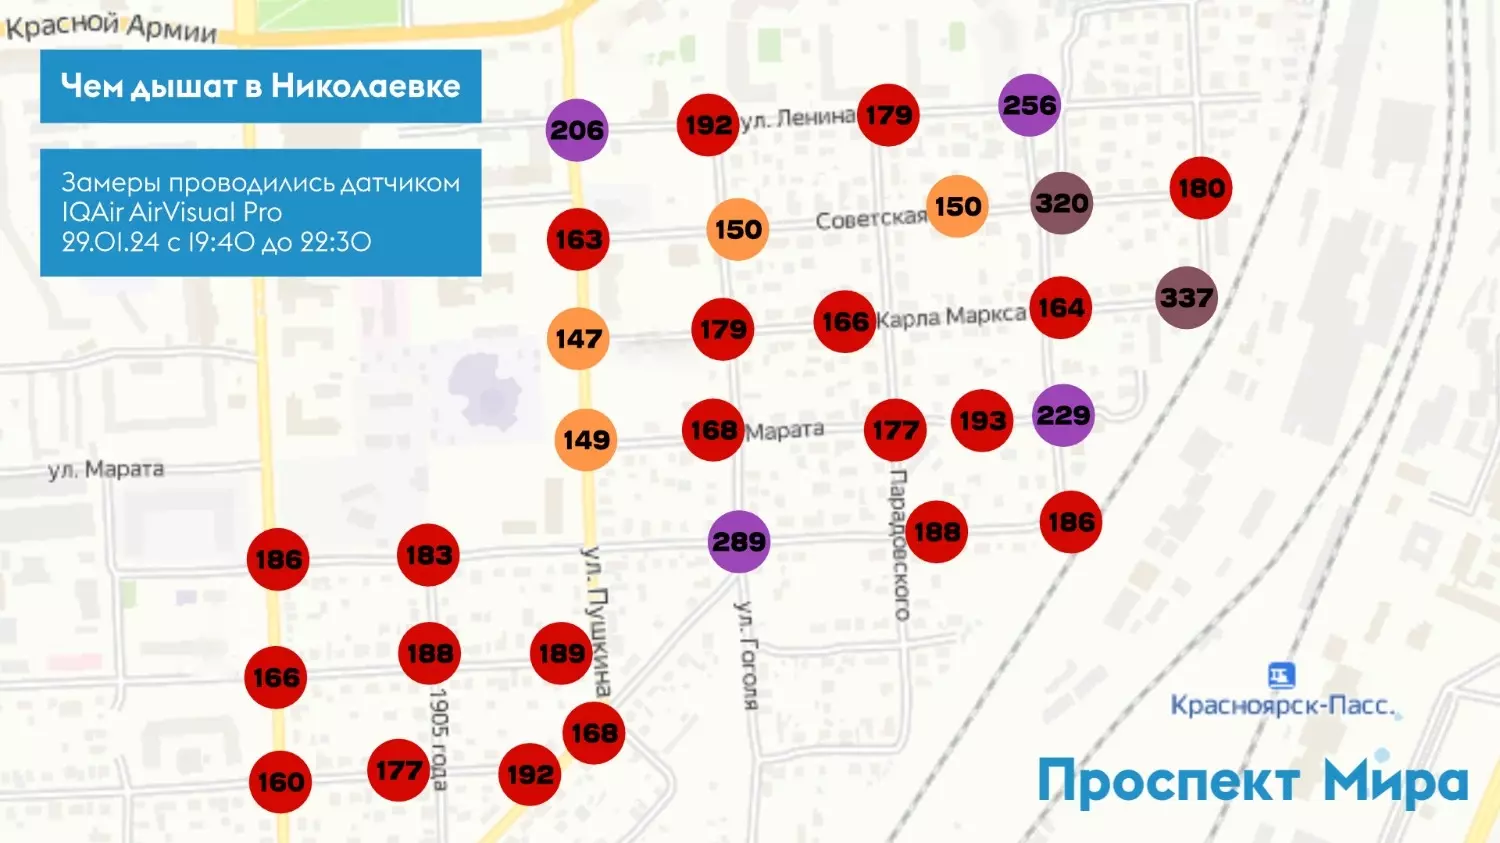 Карта всех замеров качества воздуха в Николаевке 29 января.